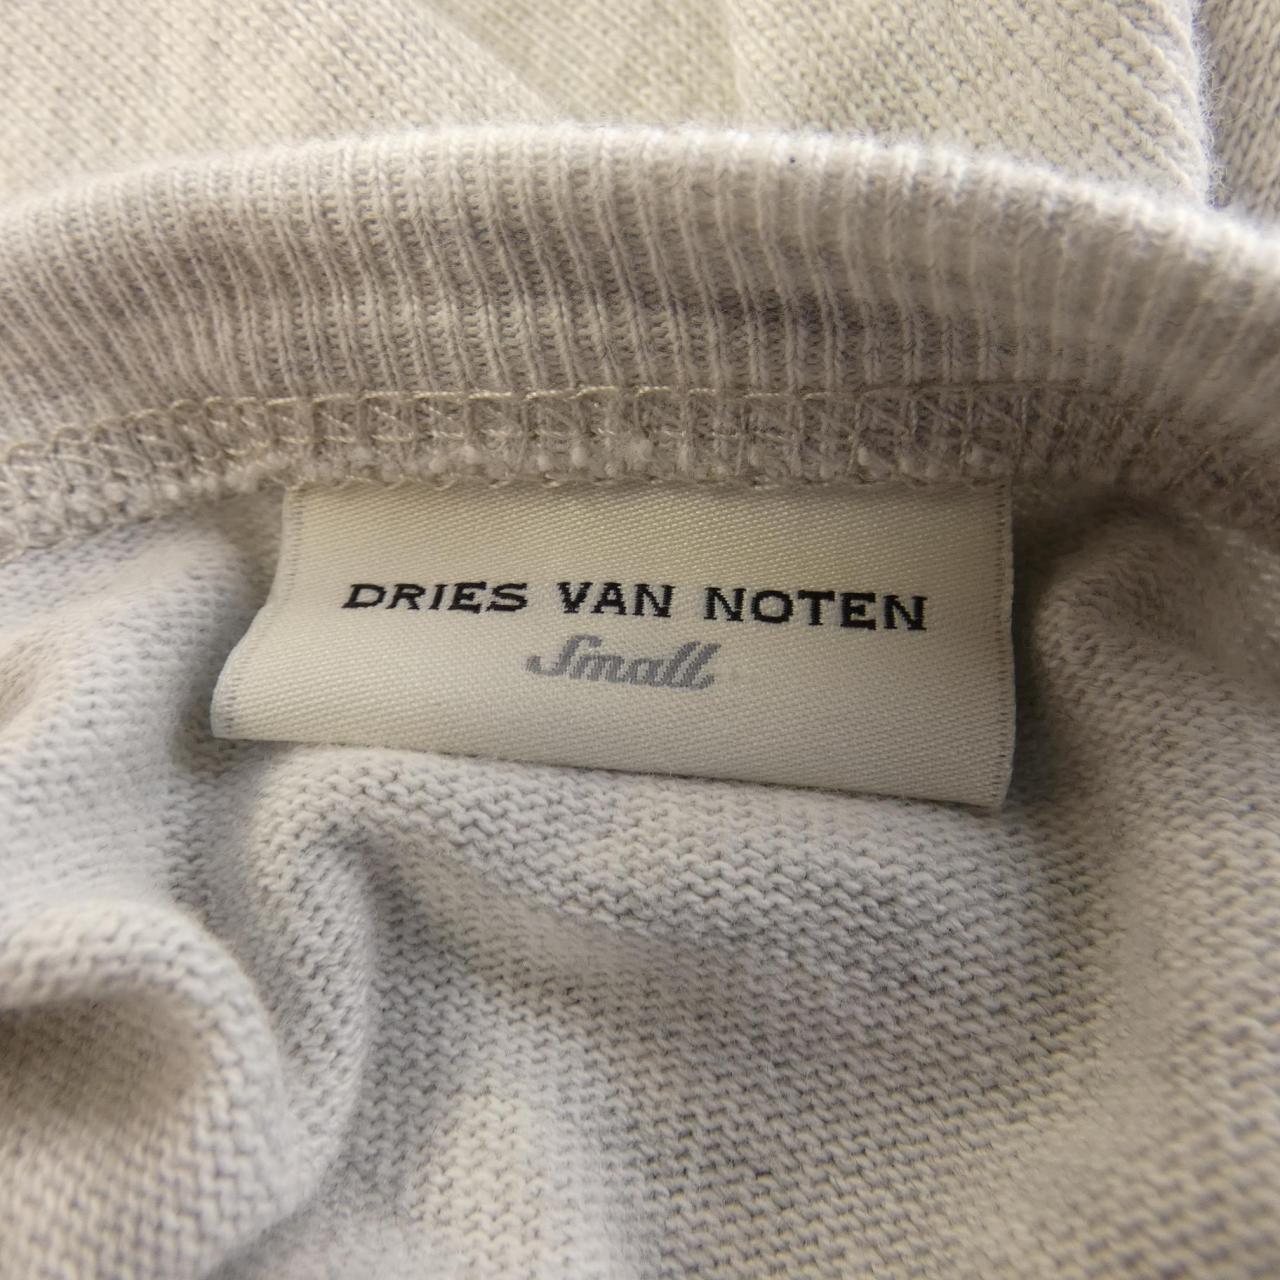 DRIES VAN NOTEN德賴斯·範諾頓 (Dries Van Noten) 上衣